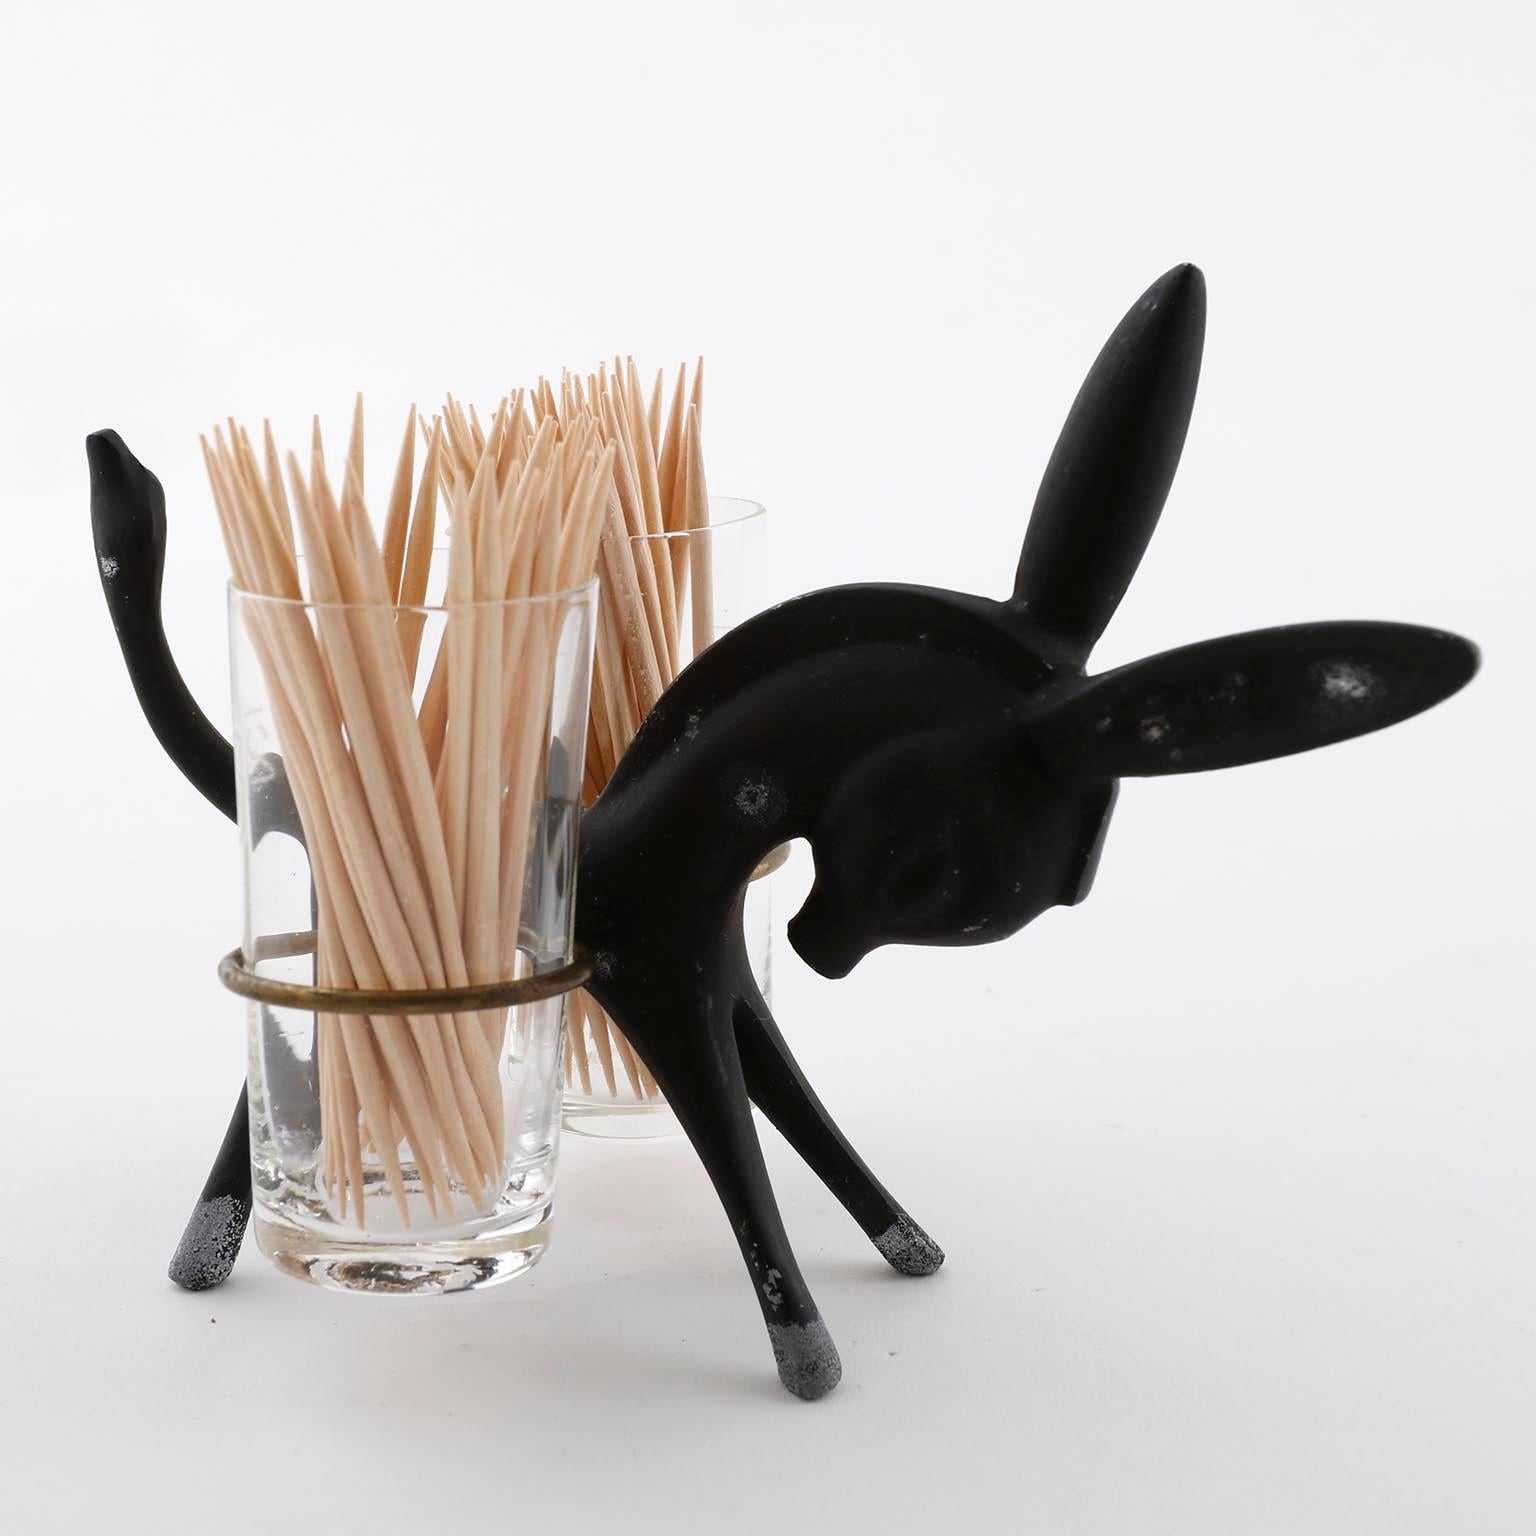 Zahnstocherhalter-Set in Form eines Esels, entworfen von Walter Bosse und hergestellt von Hertha Baller, Österreich, Wien, Mitte der 1950er Jahre.
Der Esel ist aus patiniertem und gealtertem, geschwärztem Messing gefertigt. Die Zahnstocherhalter